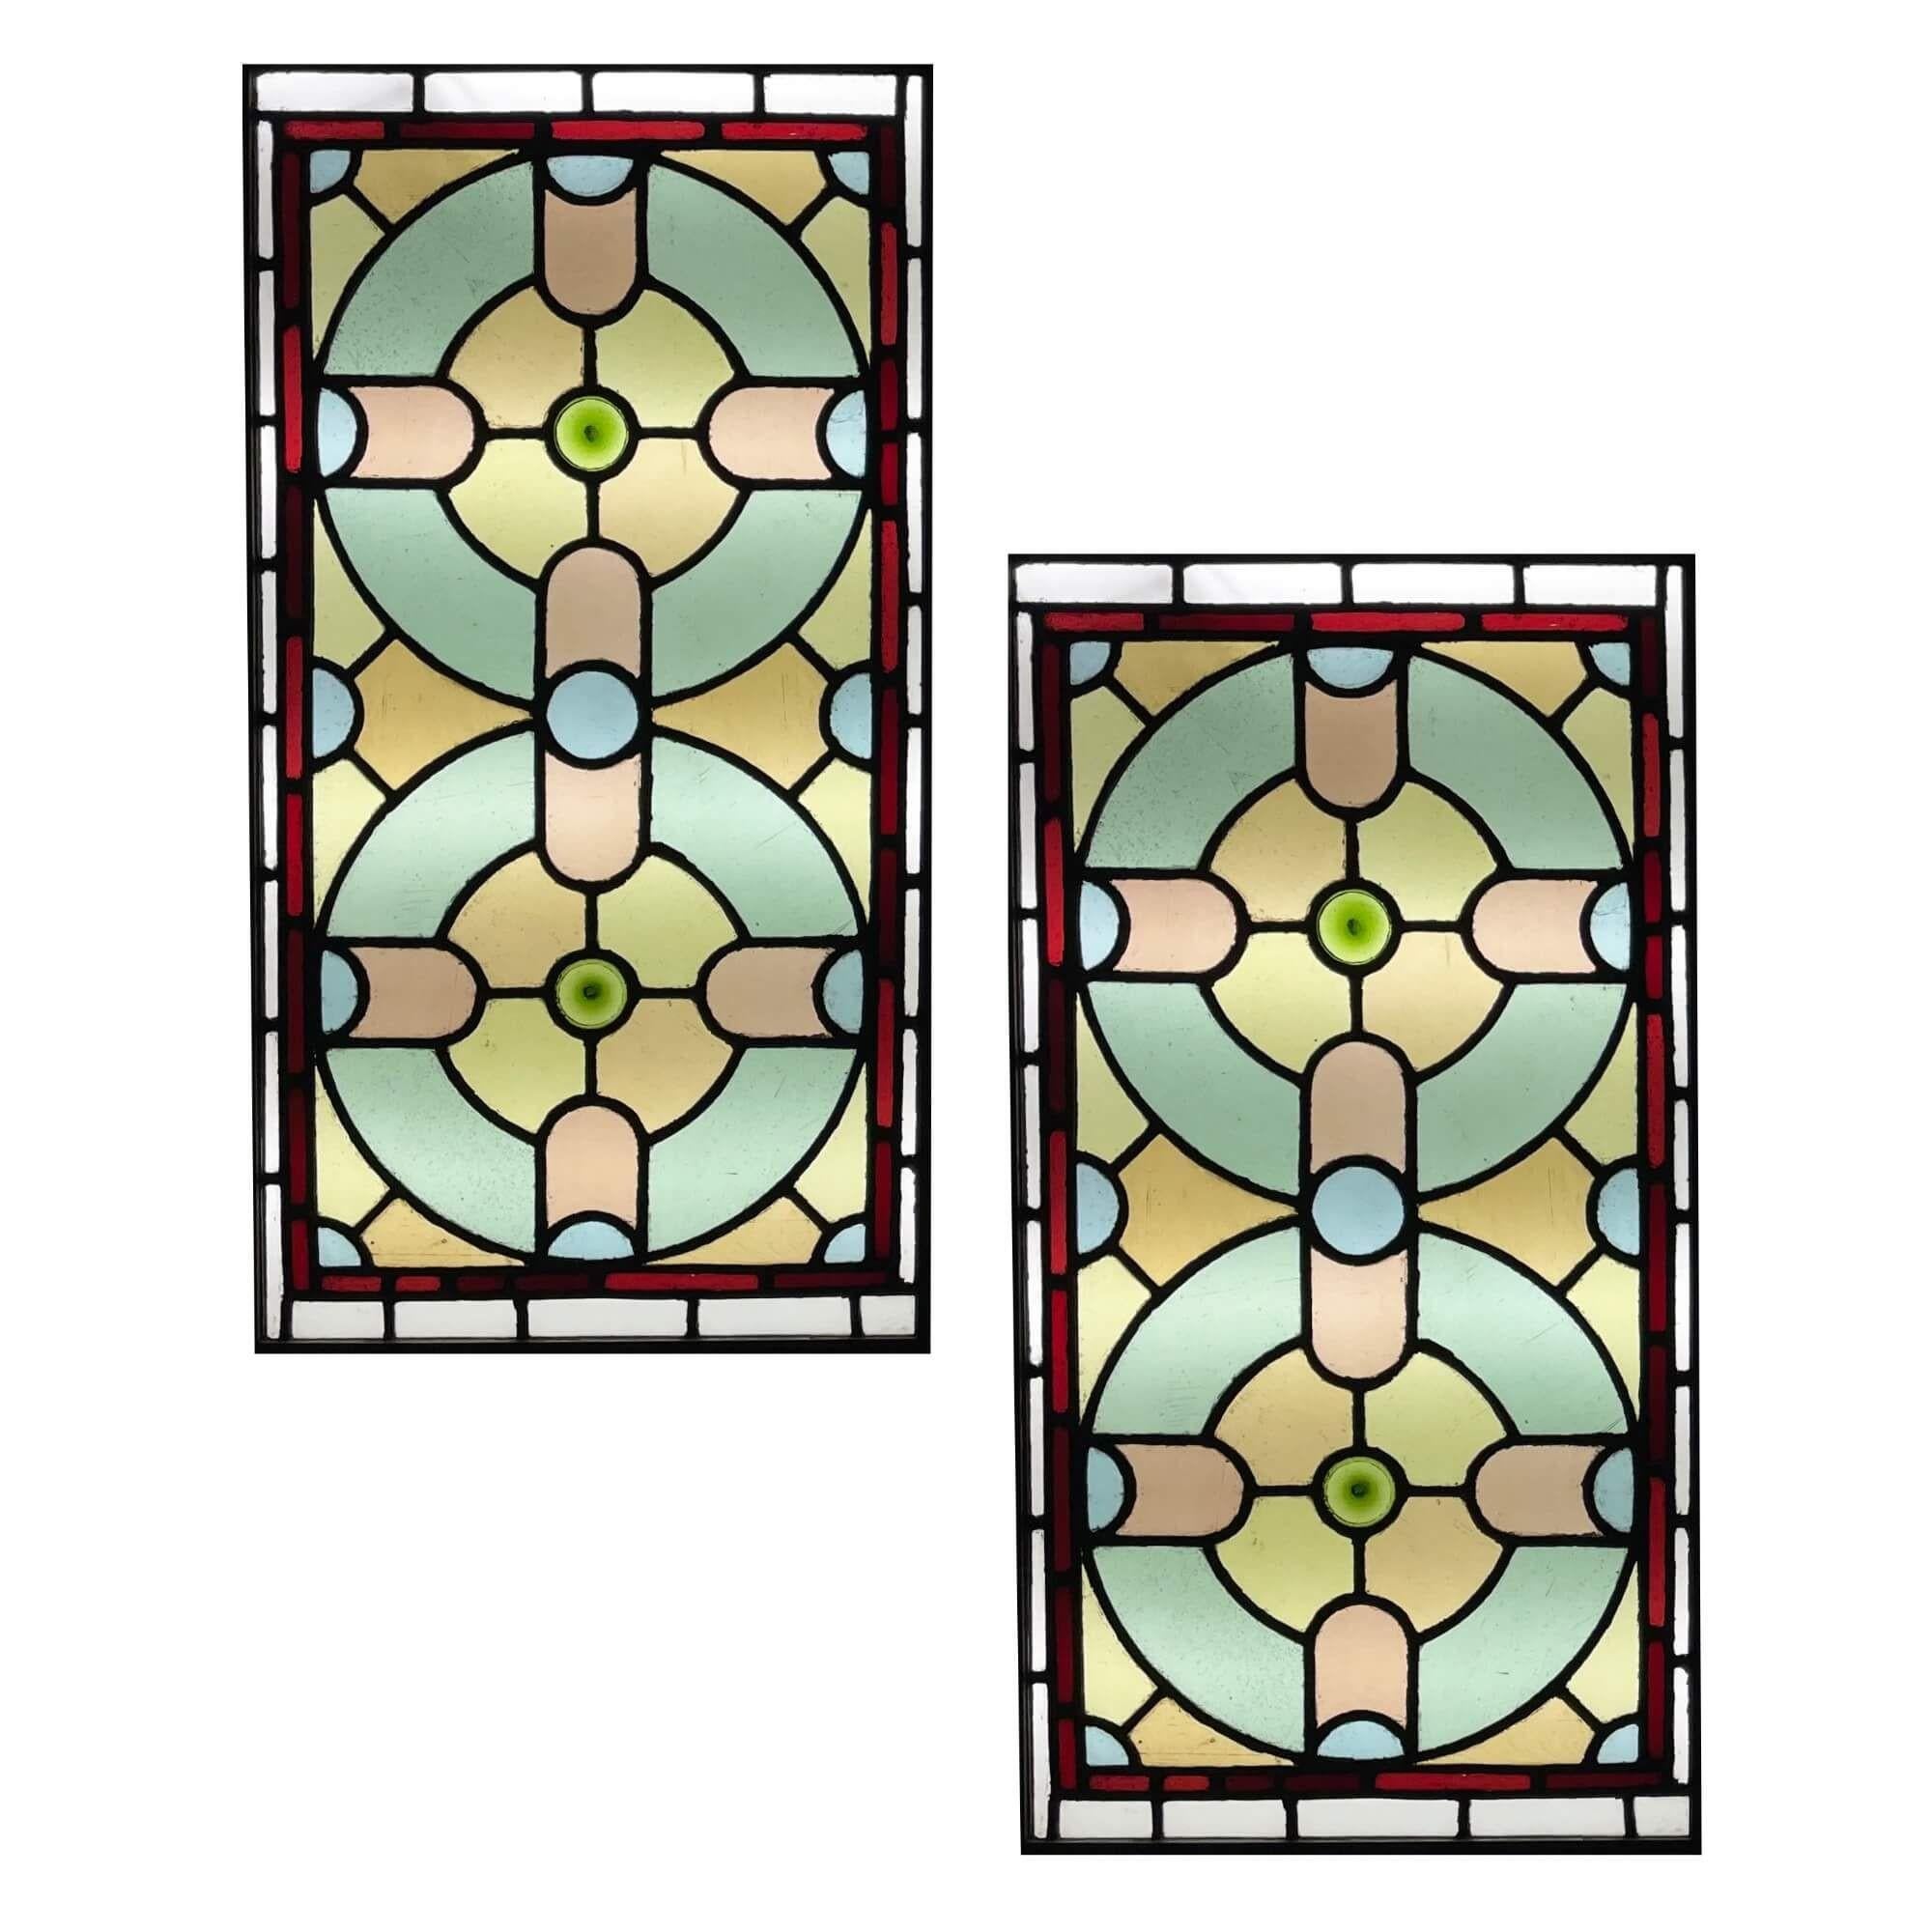 Paire de panneaux de vitraux de la fin de l'époque victorienne, originaires d'Angleterre, vers 1900. Ces vitraux colorés sont de grande taille et sont actuellement fixés dans des cadres en bois. Les panneaux sont décorés de formes qui s'imbriquent